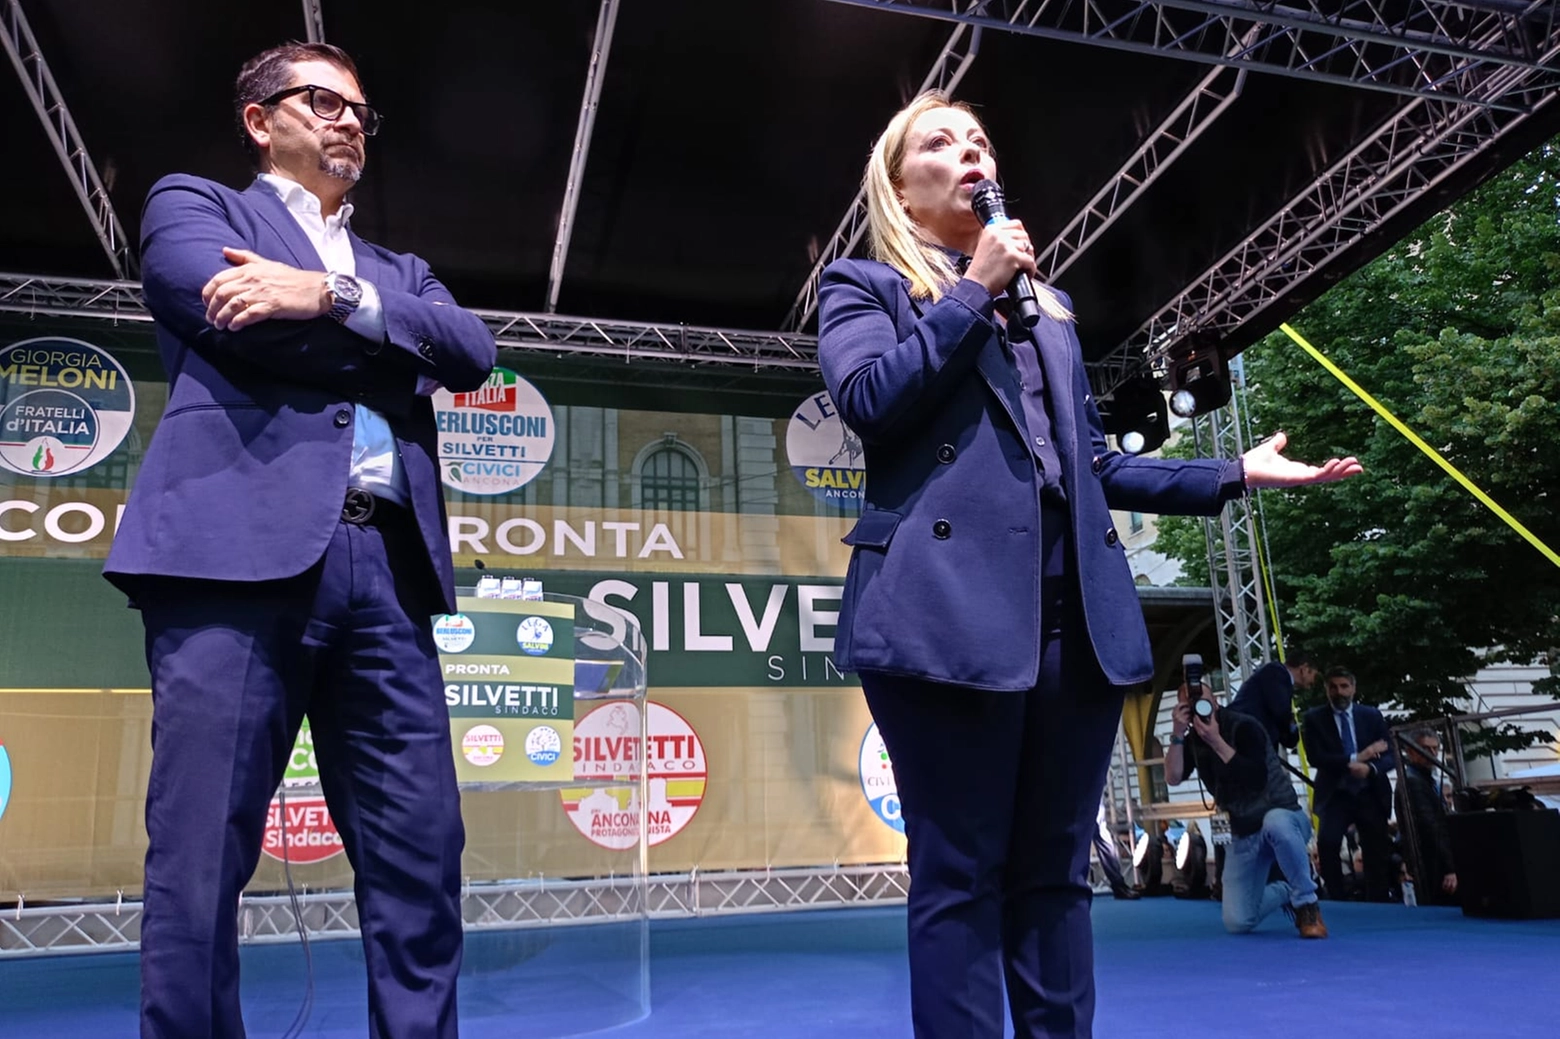 La premier Meloni sul palco per sostenere Silvetti, il candidato sindaco di Ancona per il Centrodestra